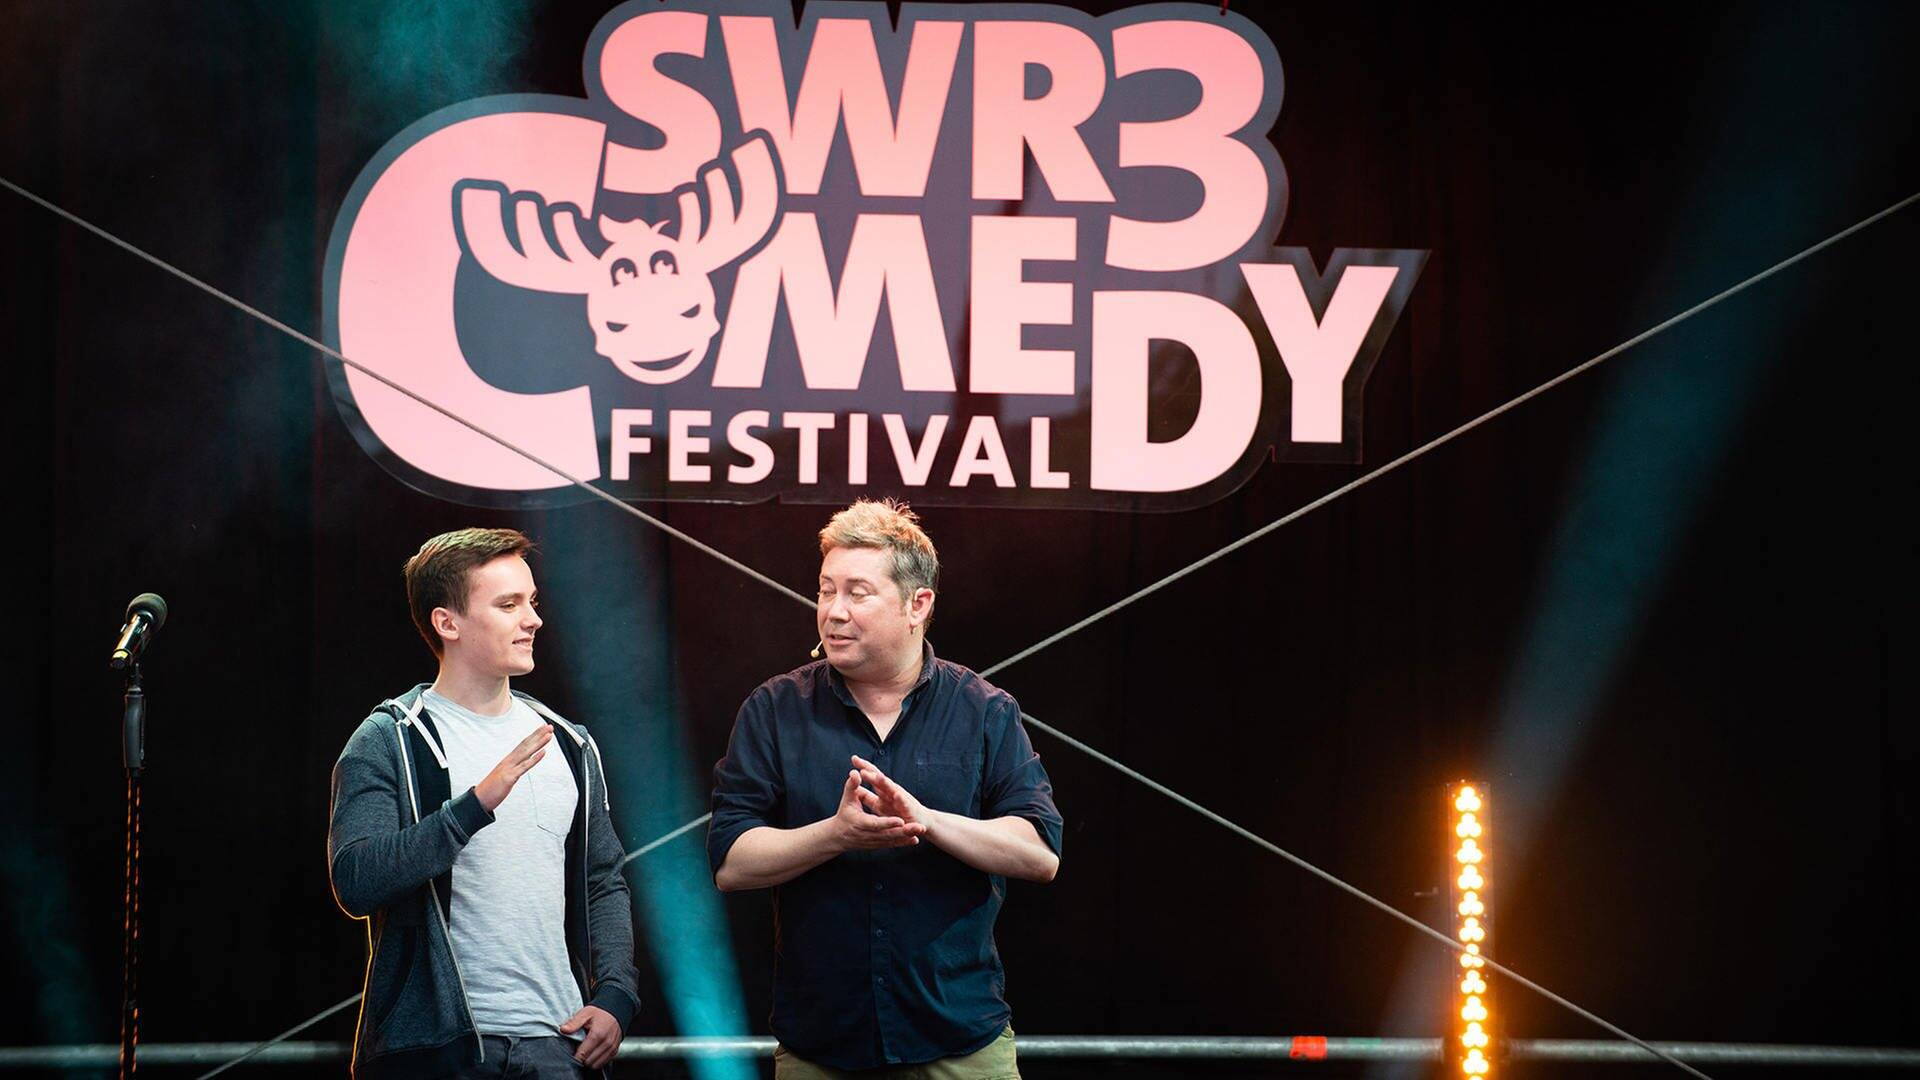 Sascha Korf beim SWR3 Comedy Festival 2019 (Foto: SWR3)